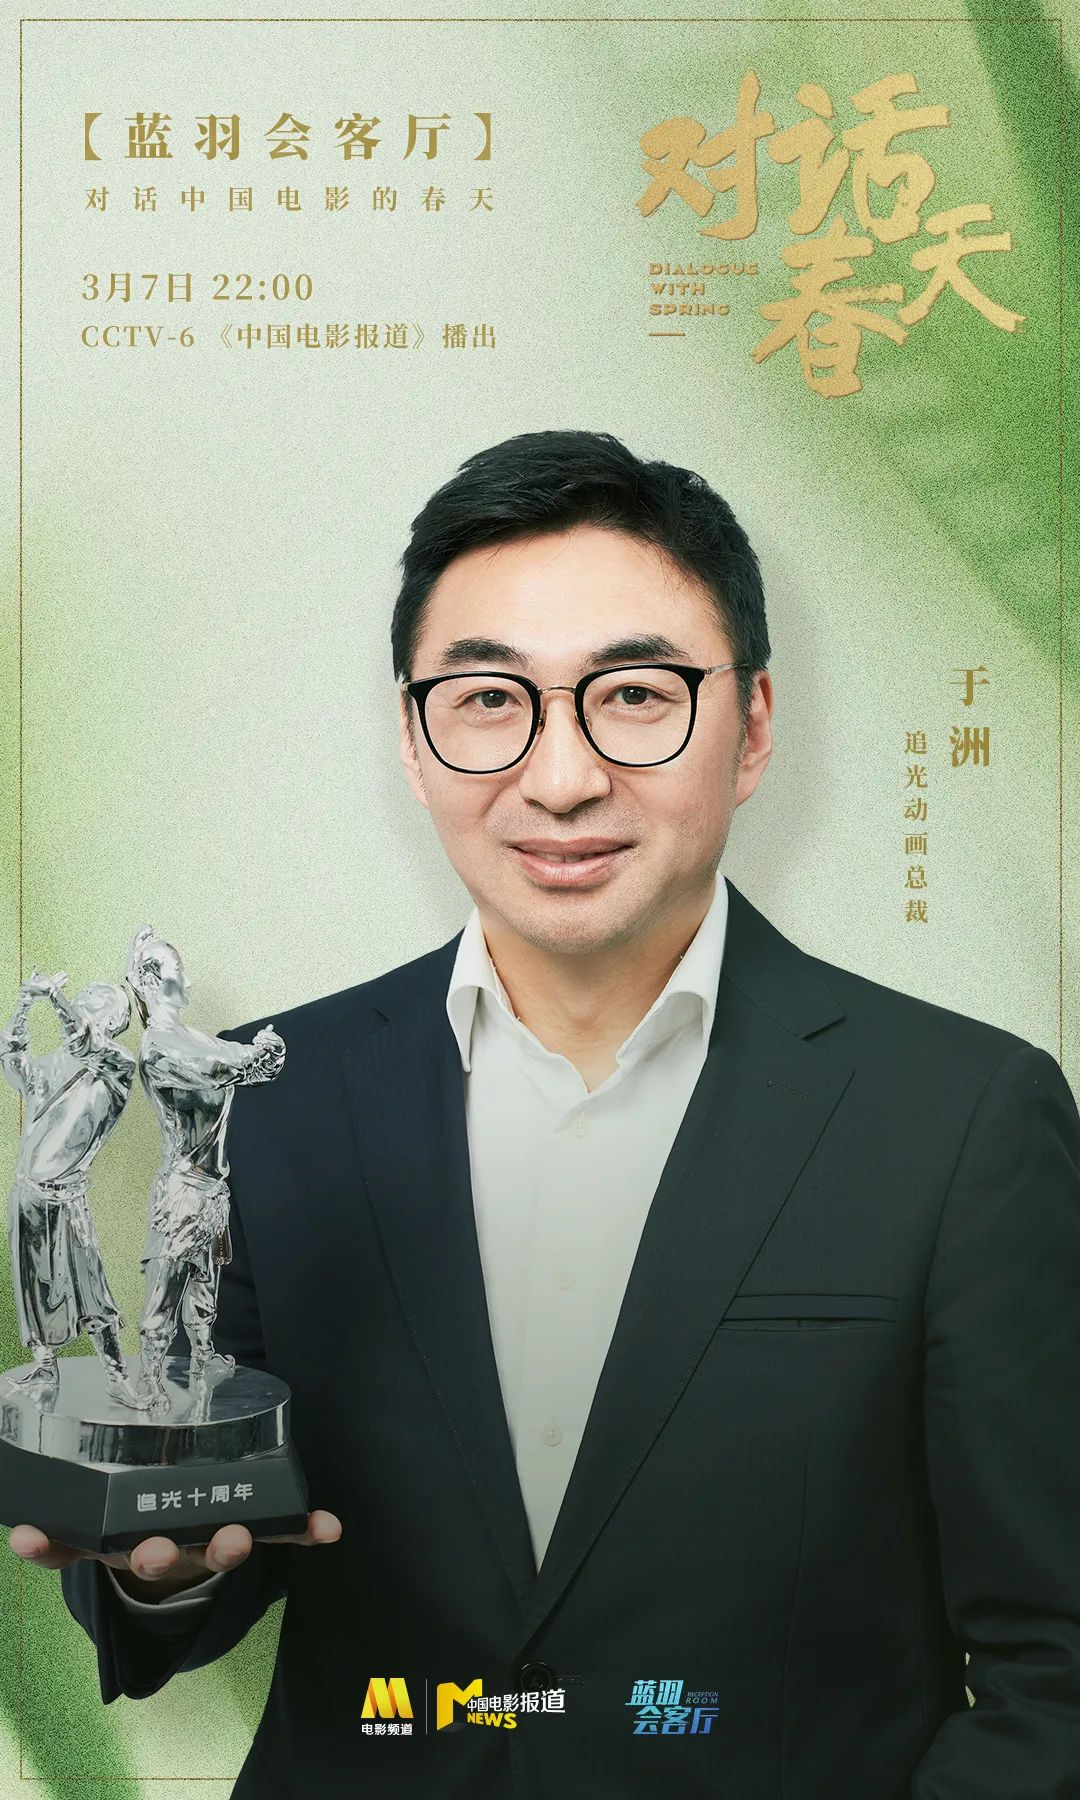 蓝羽对话追光动画总裁于洲:中国团队讲好中国故事